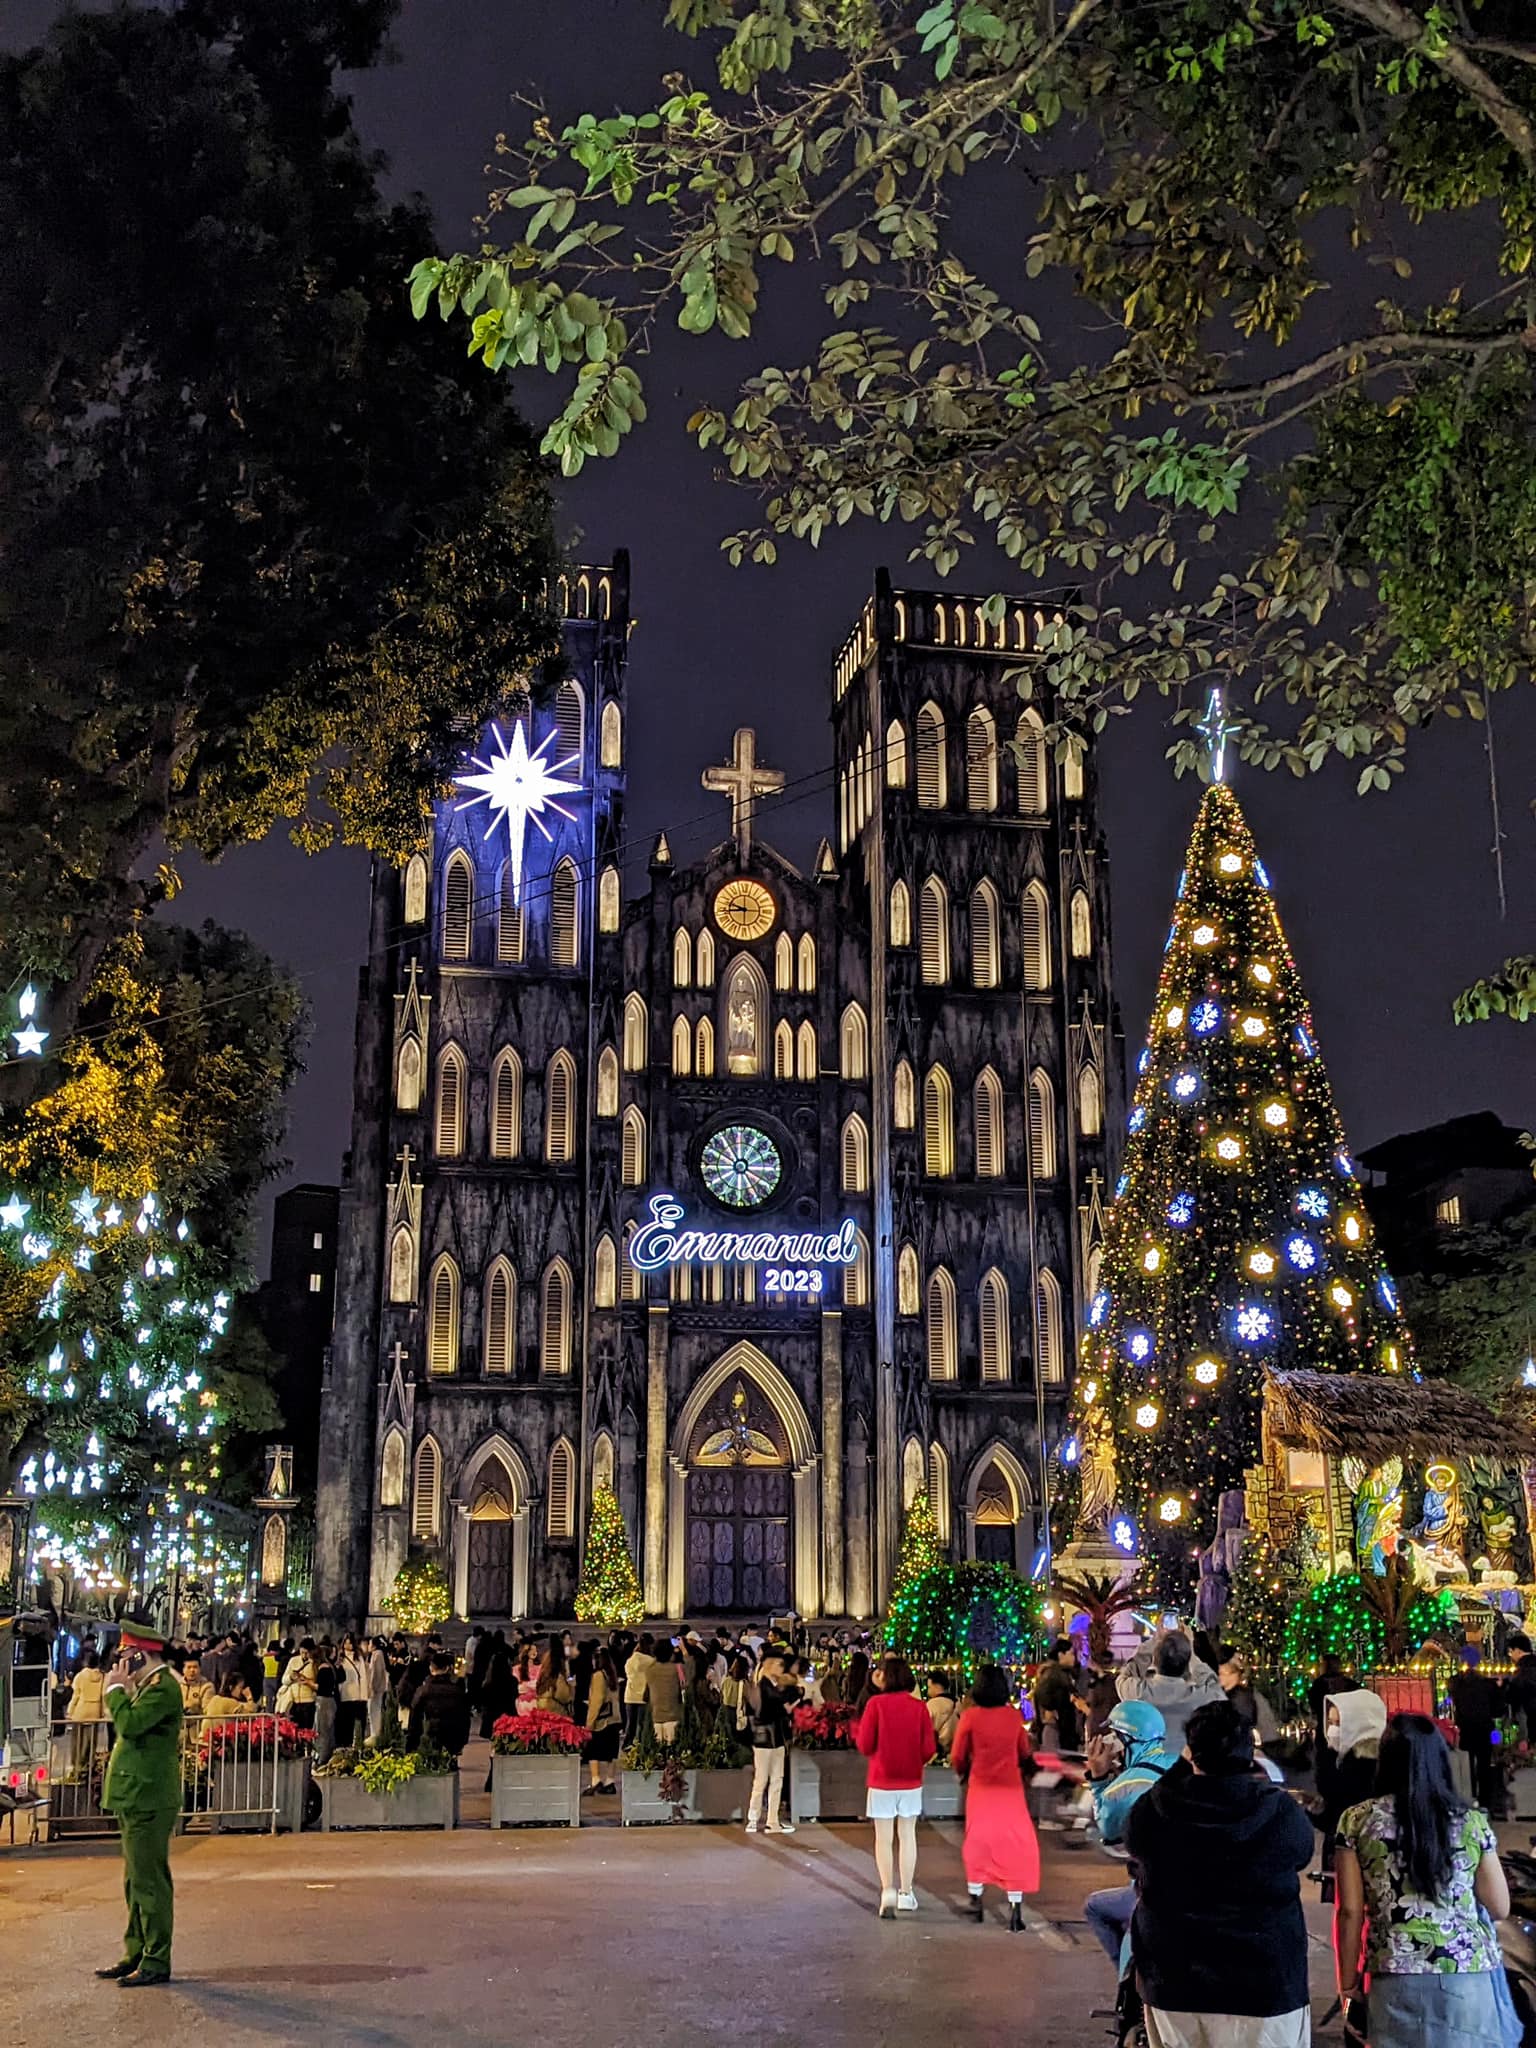 Tại Nhà thờ Lớn - nơi thu hút được khá đông người dân và du khách đến đón Giáng sinh sớm trong ngày cuối tuần mặc dù trời lạnh.